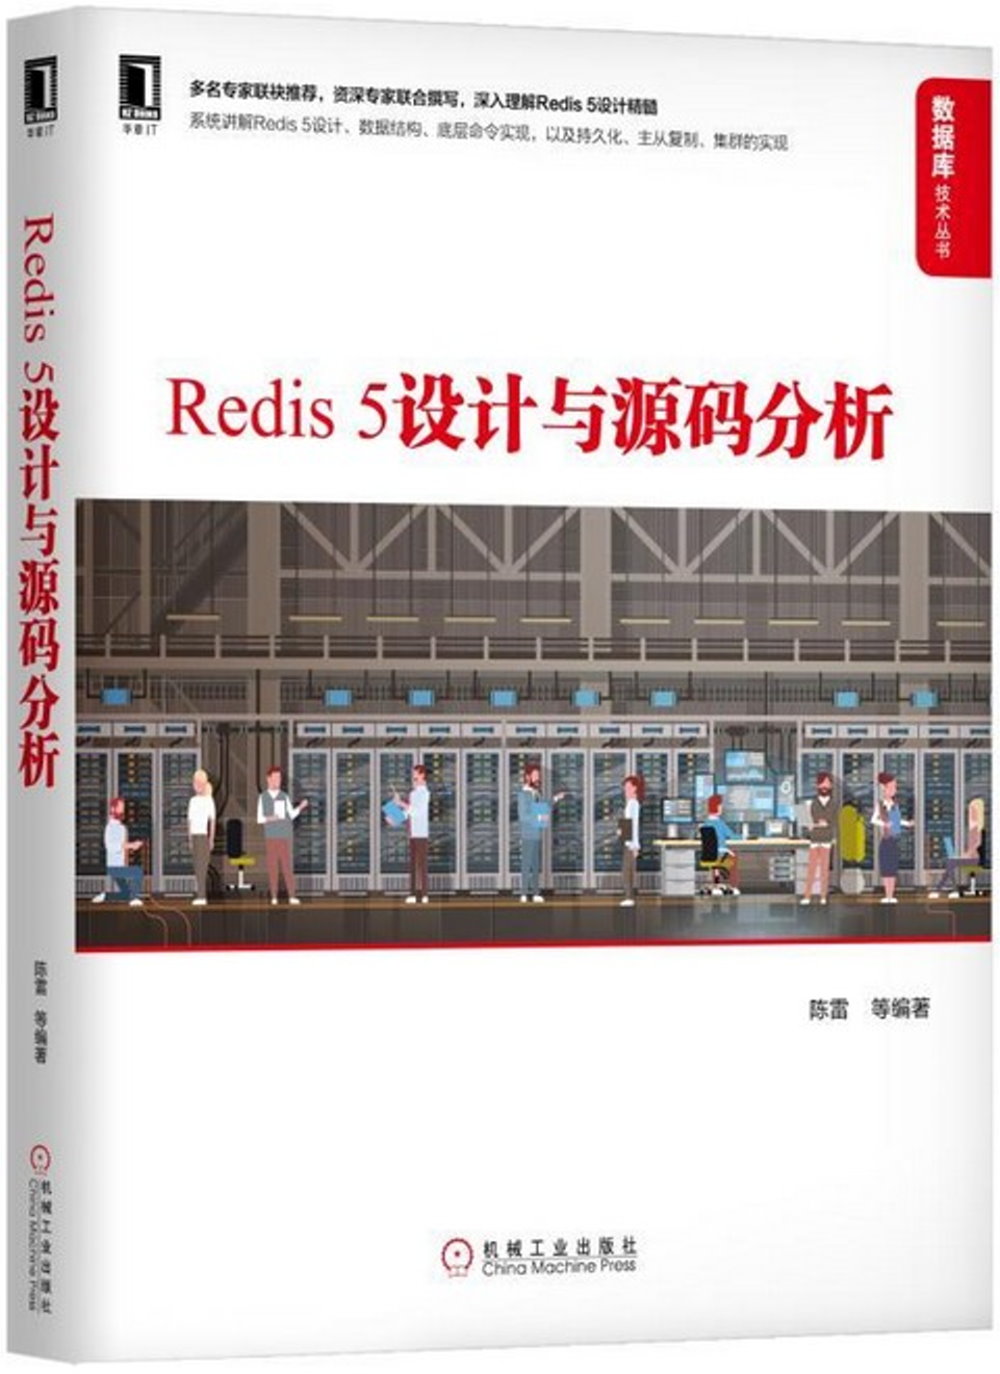 Redis5設計與源碼分析